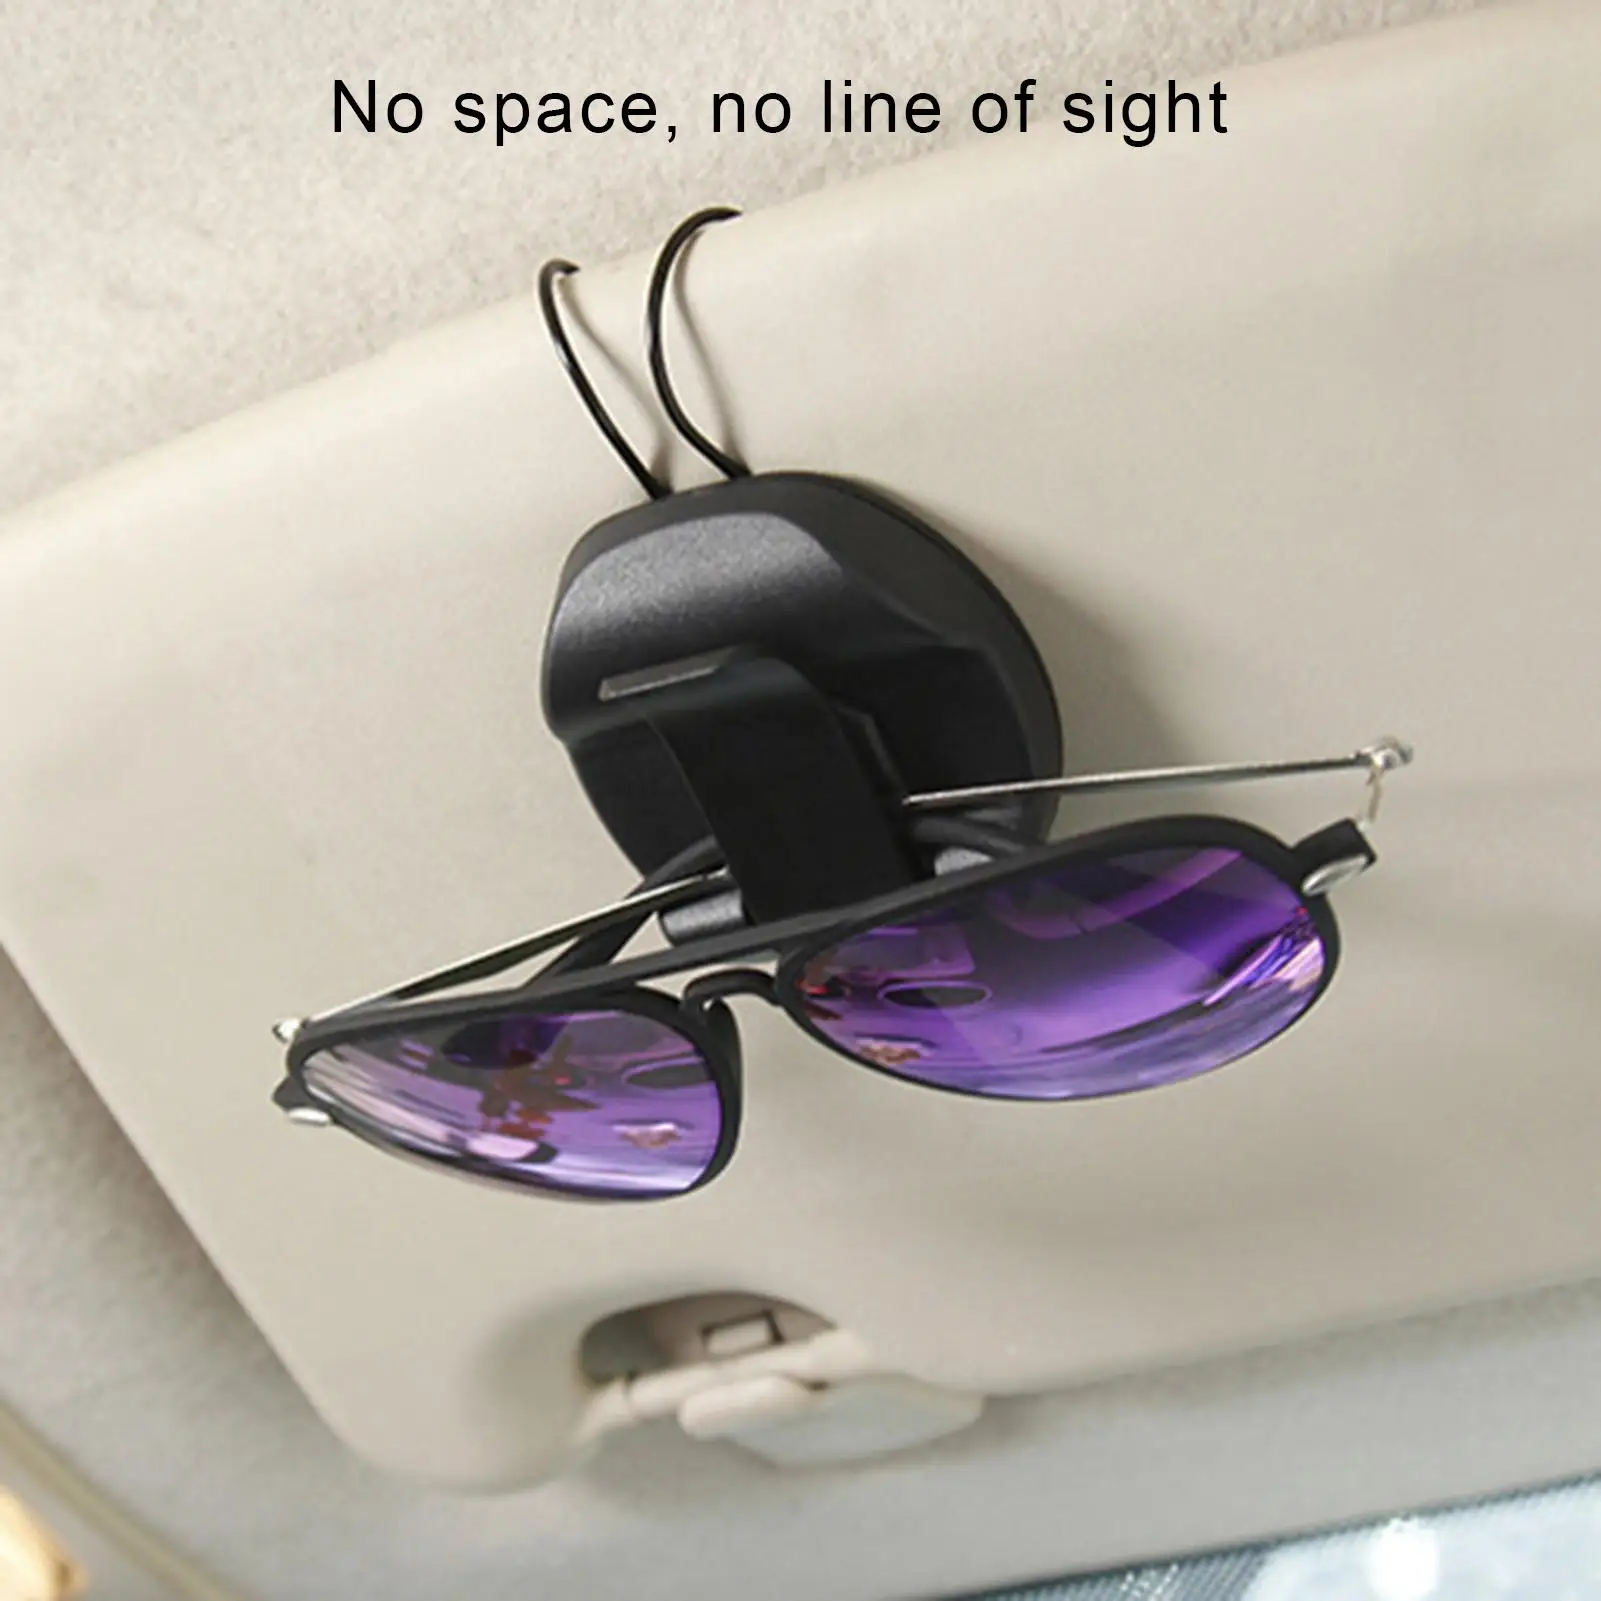 

Многофункциональный автомобильный солнцезащитный козырек, очки, очки билет клип авто держатель с креплением аксессуар